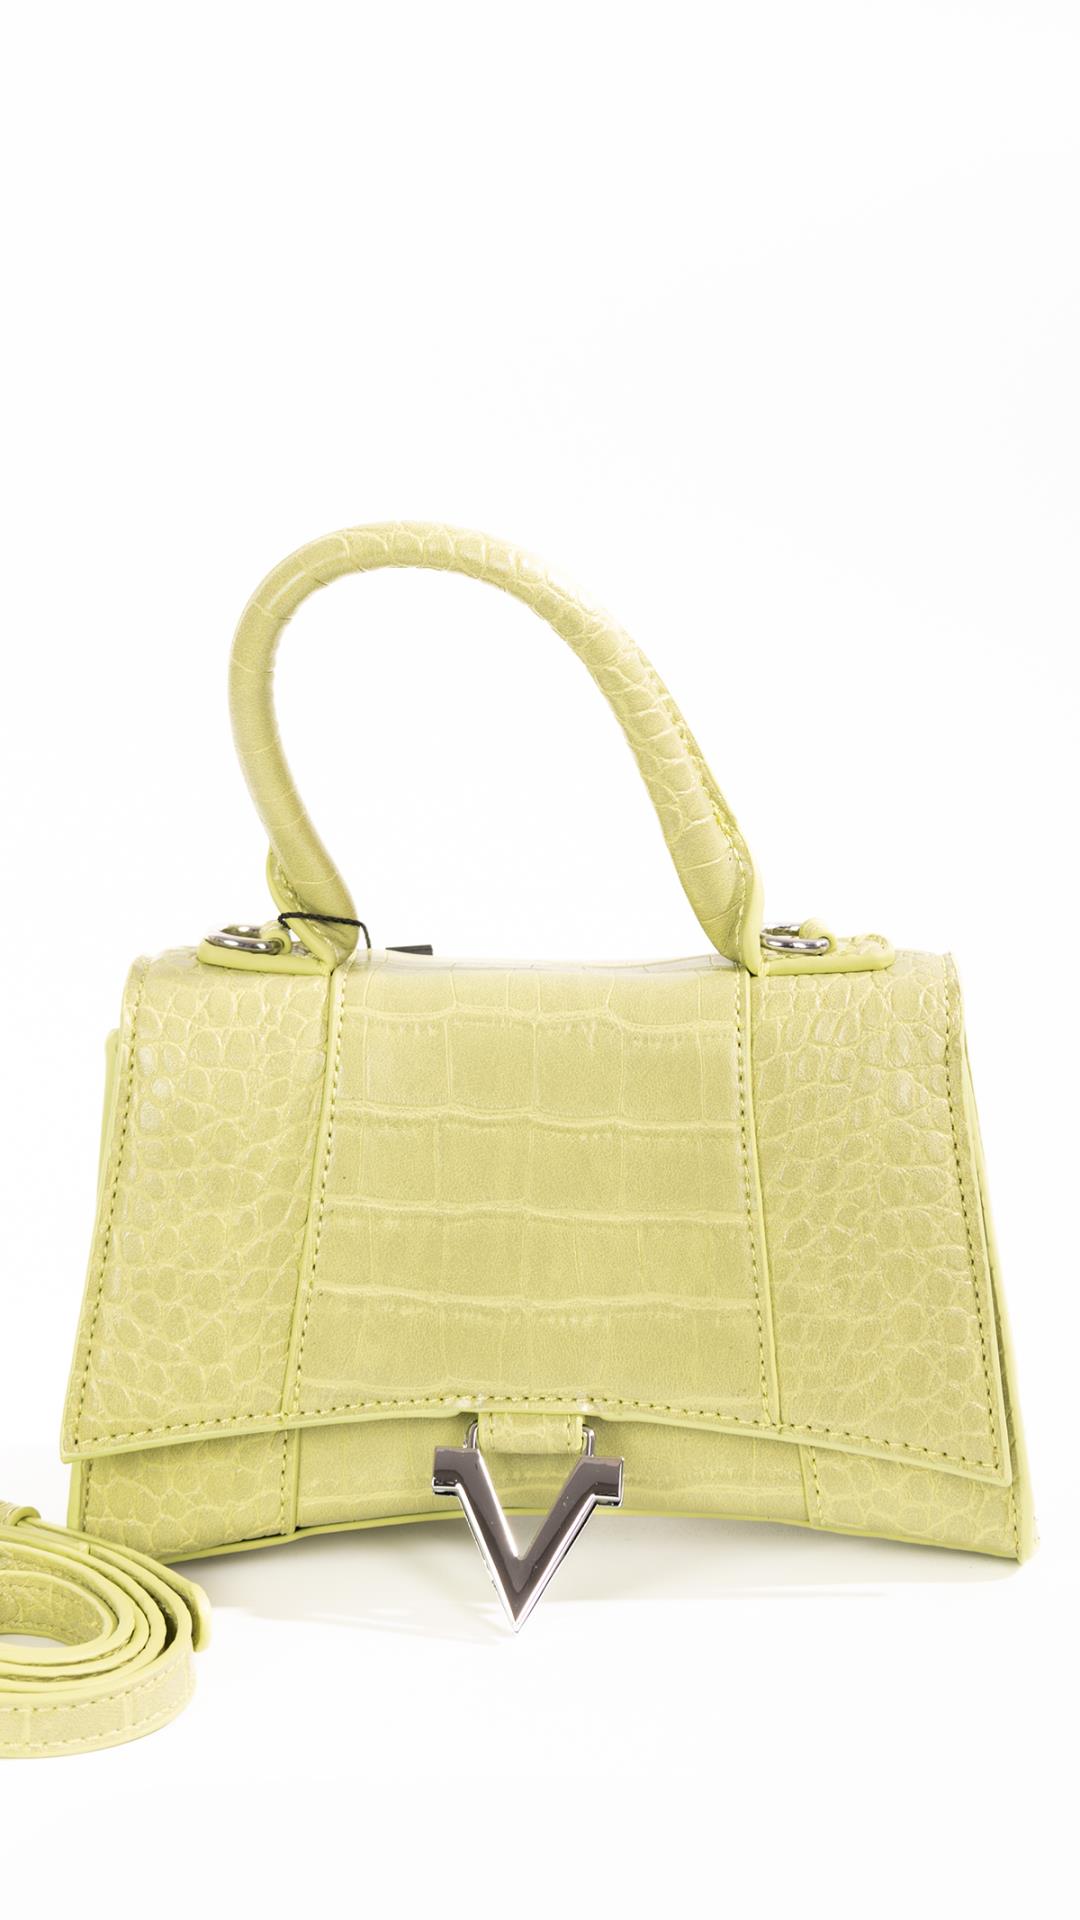 Small handbag with  v shaped accessory